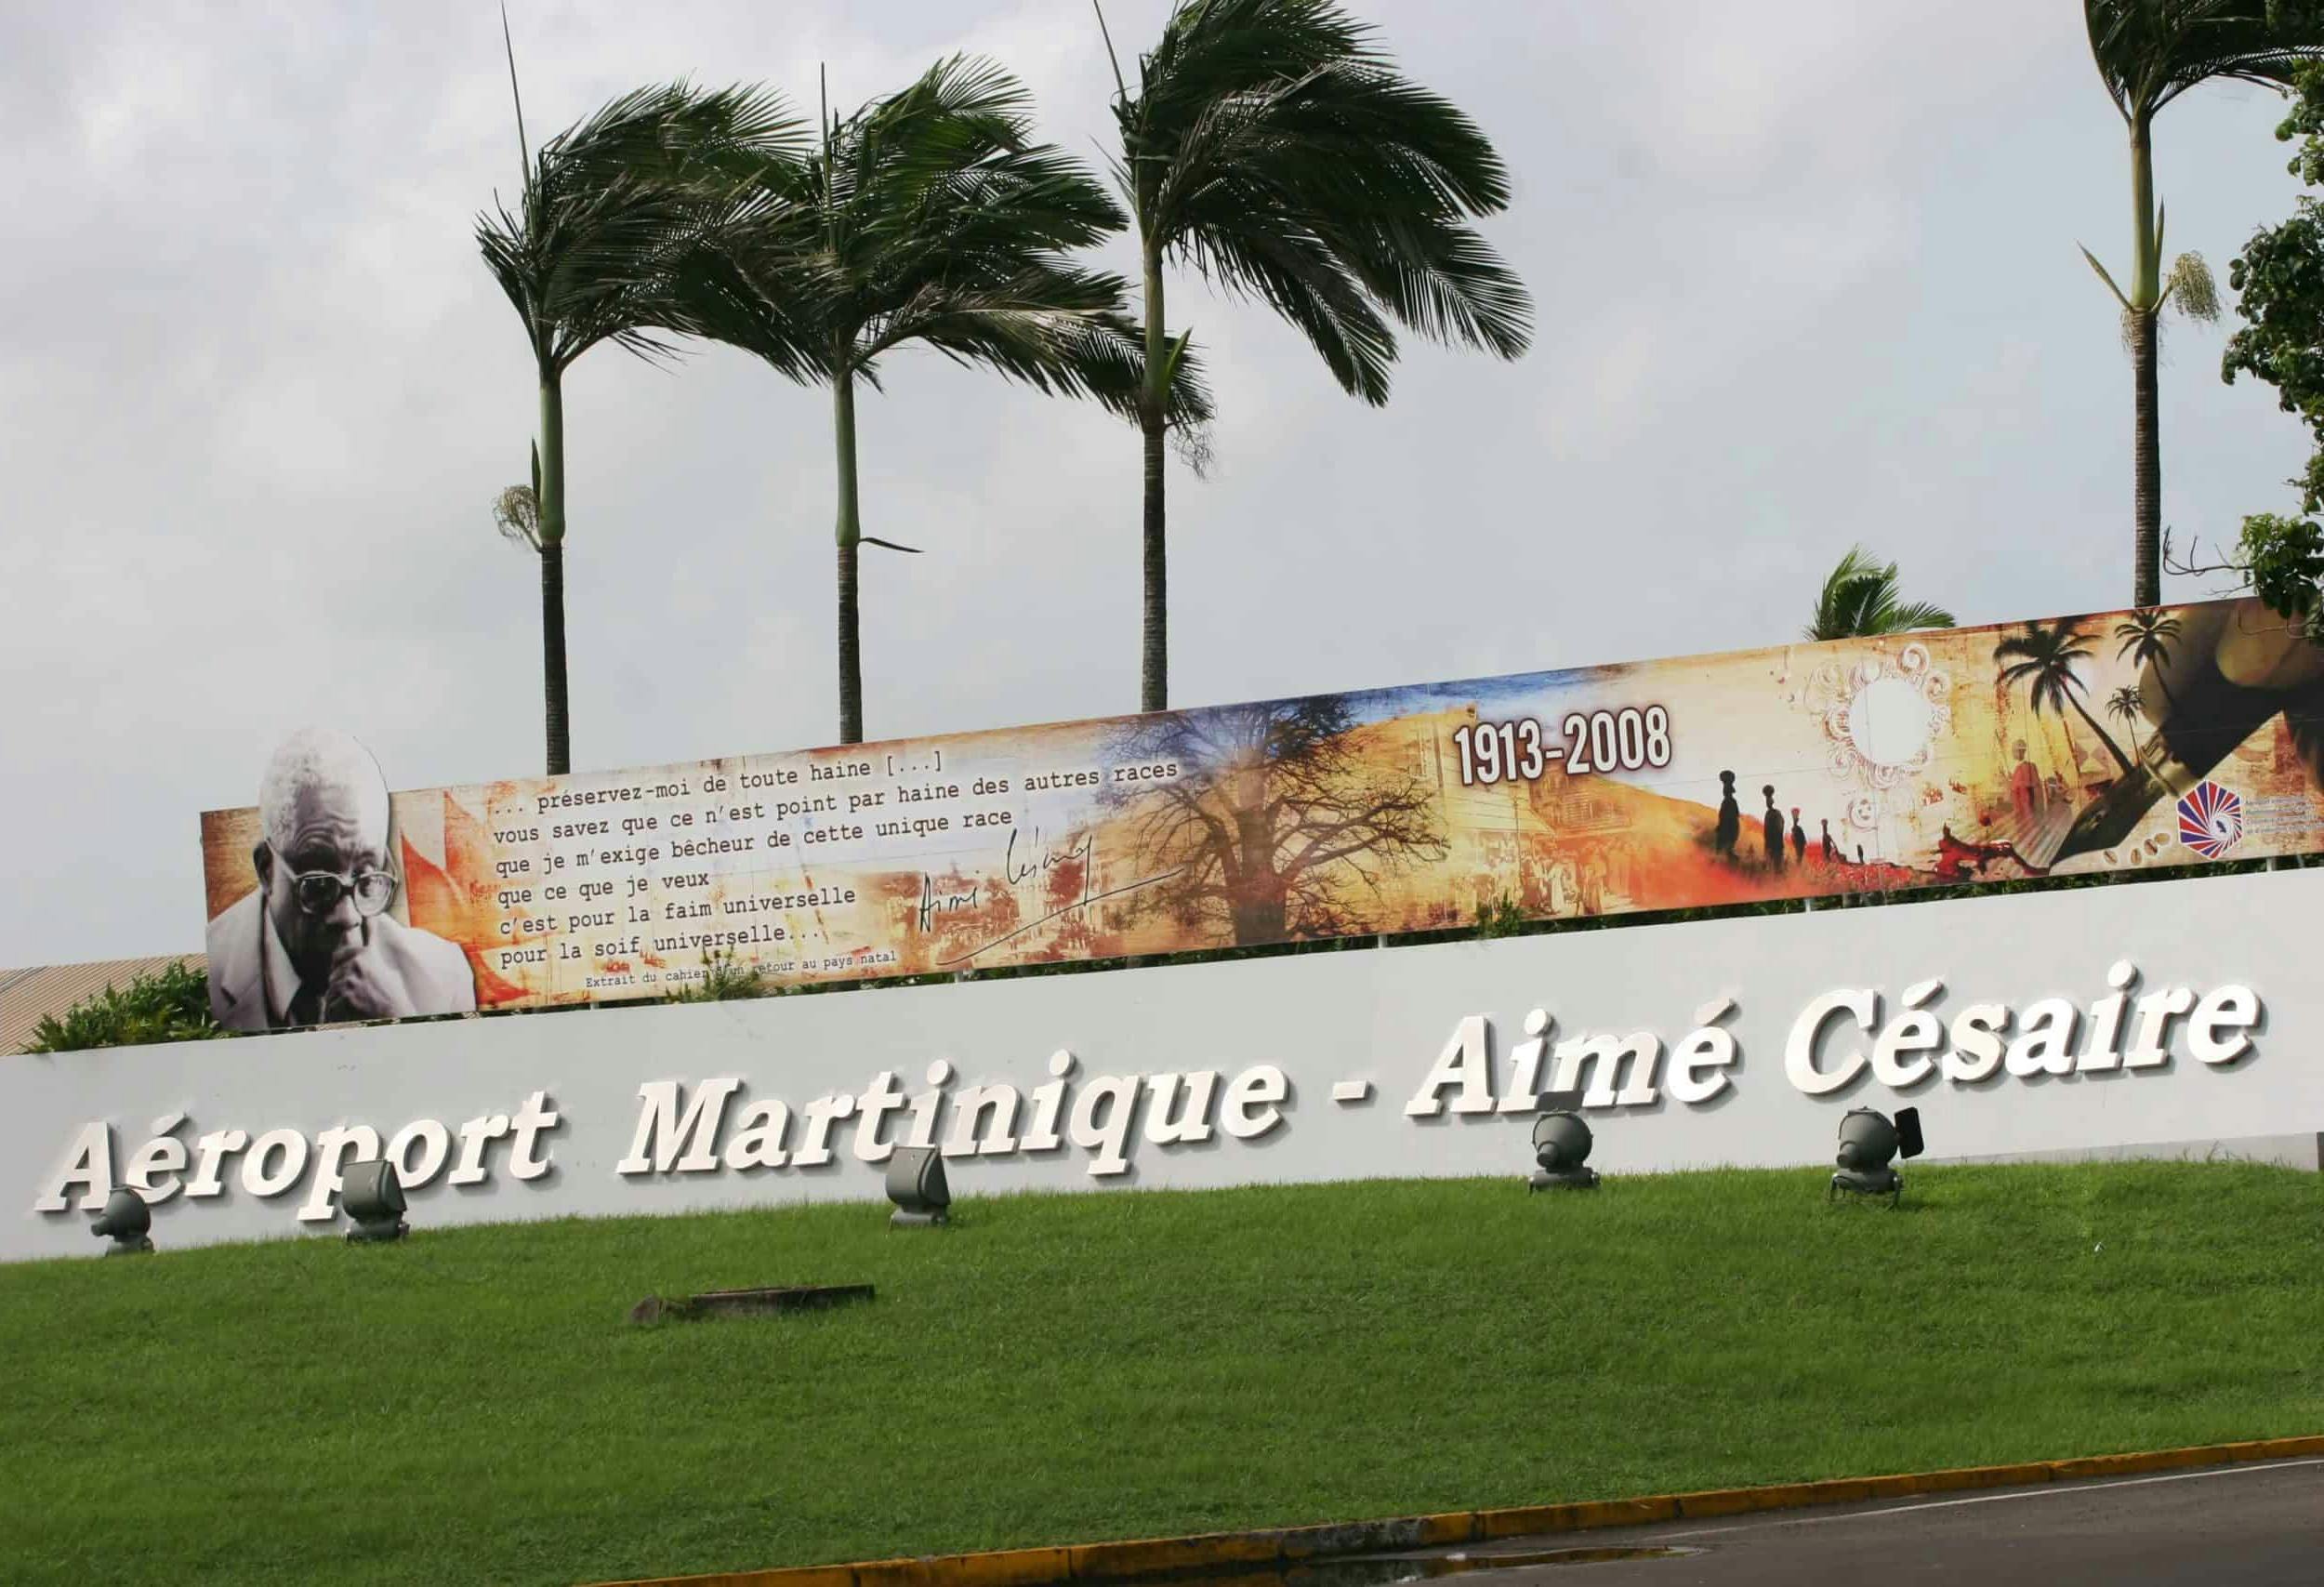 Ront point de l'aéroport Martinique - Aimé Césaire